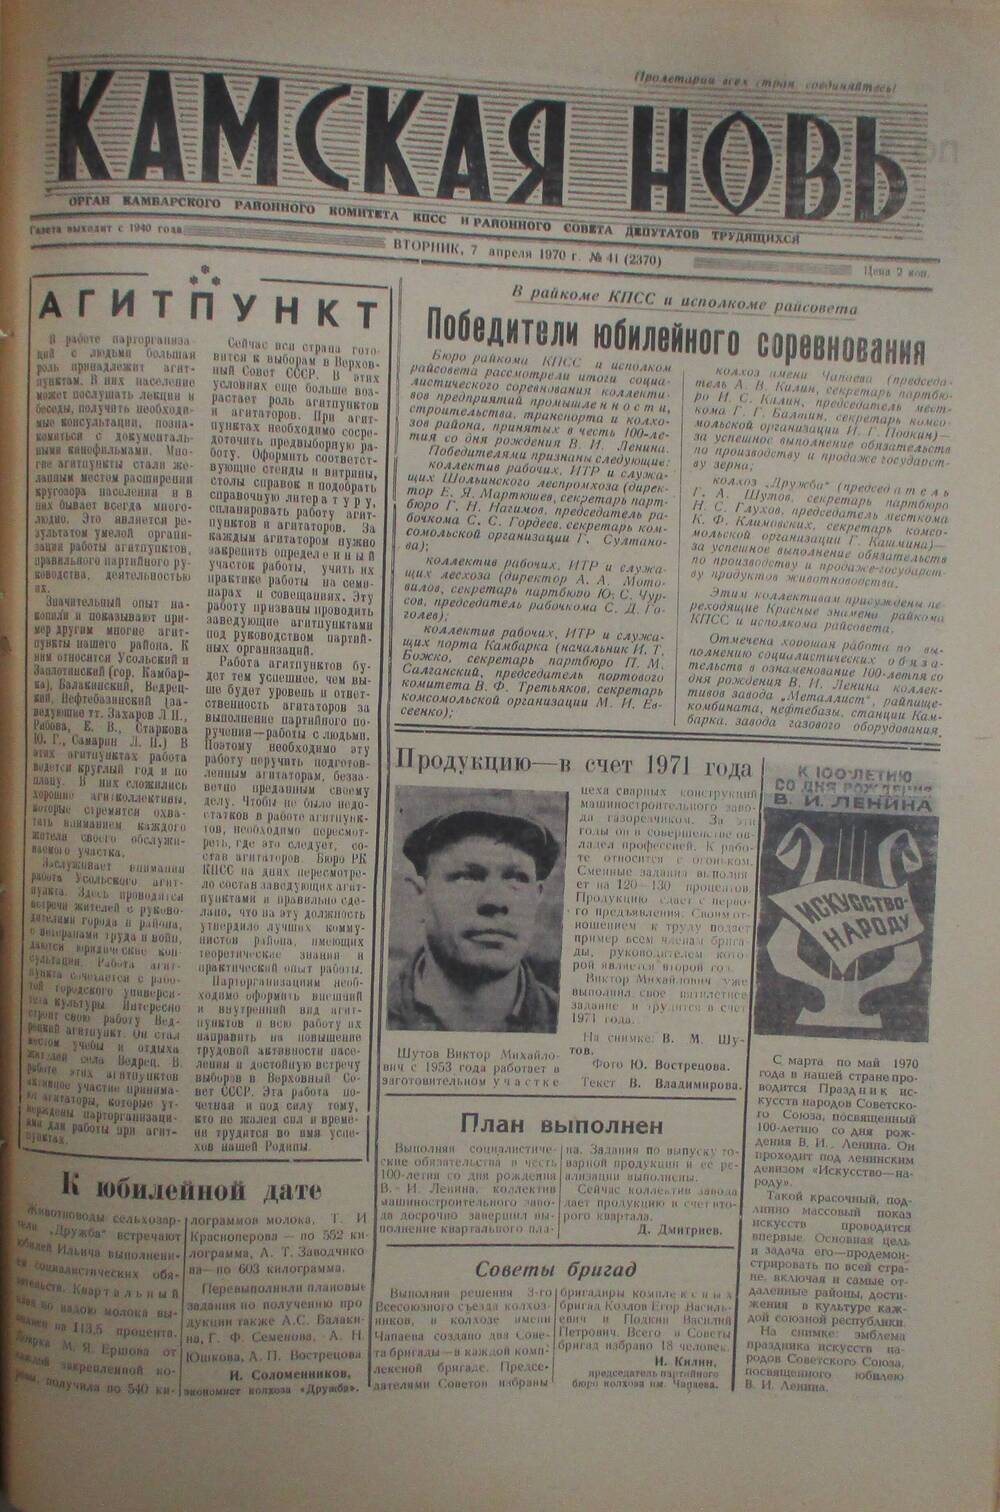 Газеты Камская новь за 1970 год. с №1 по №83., №41.